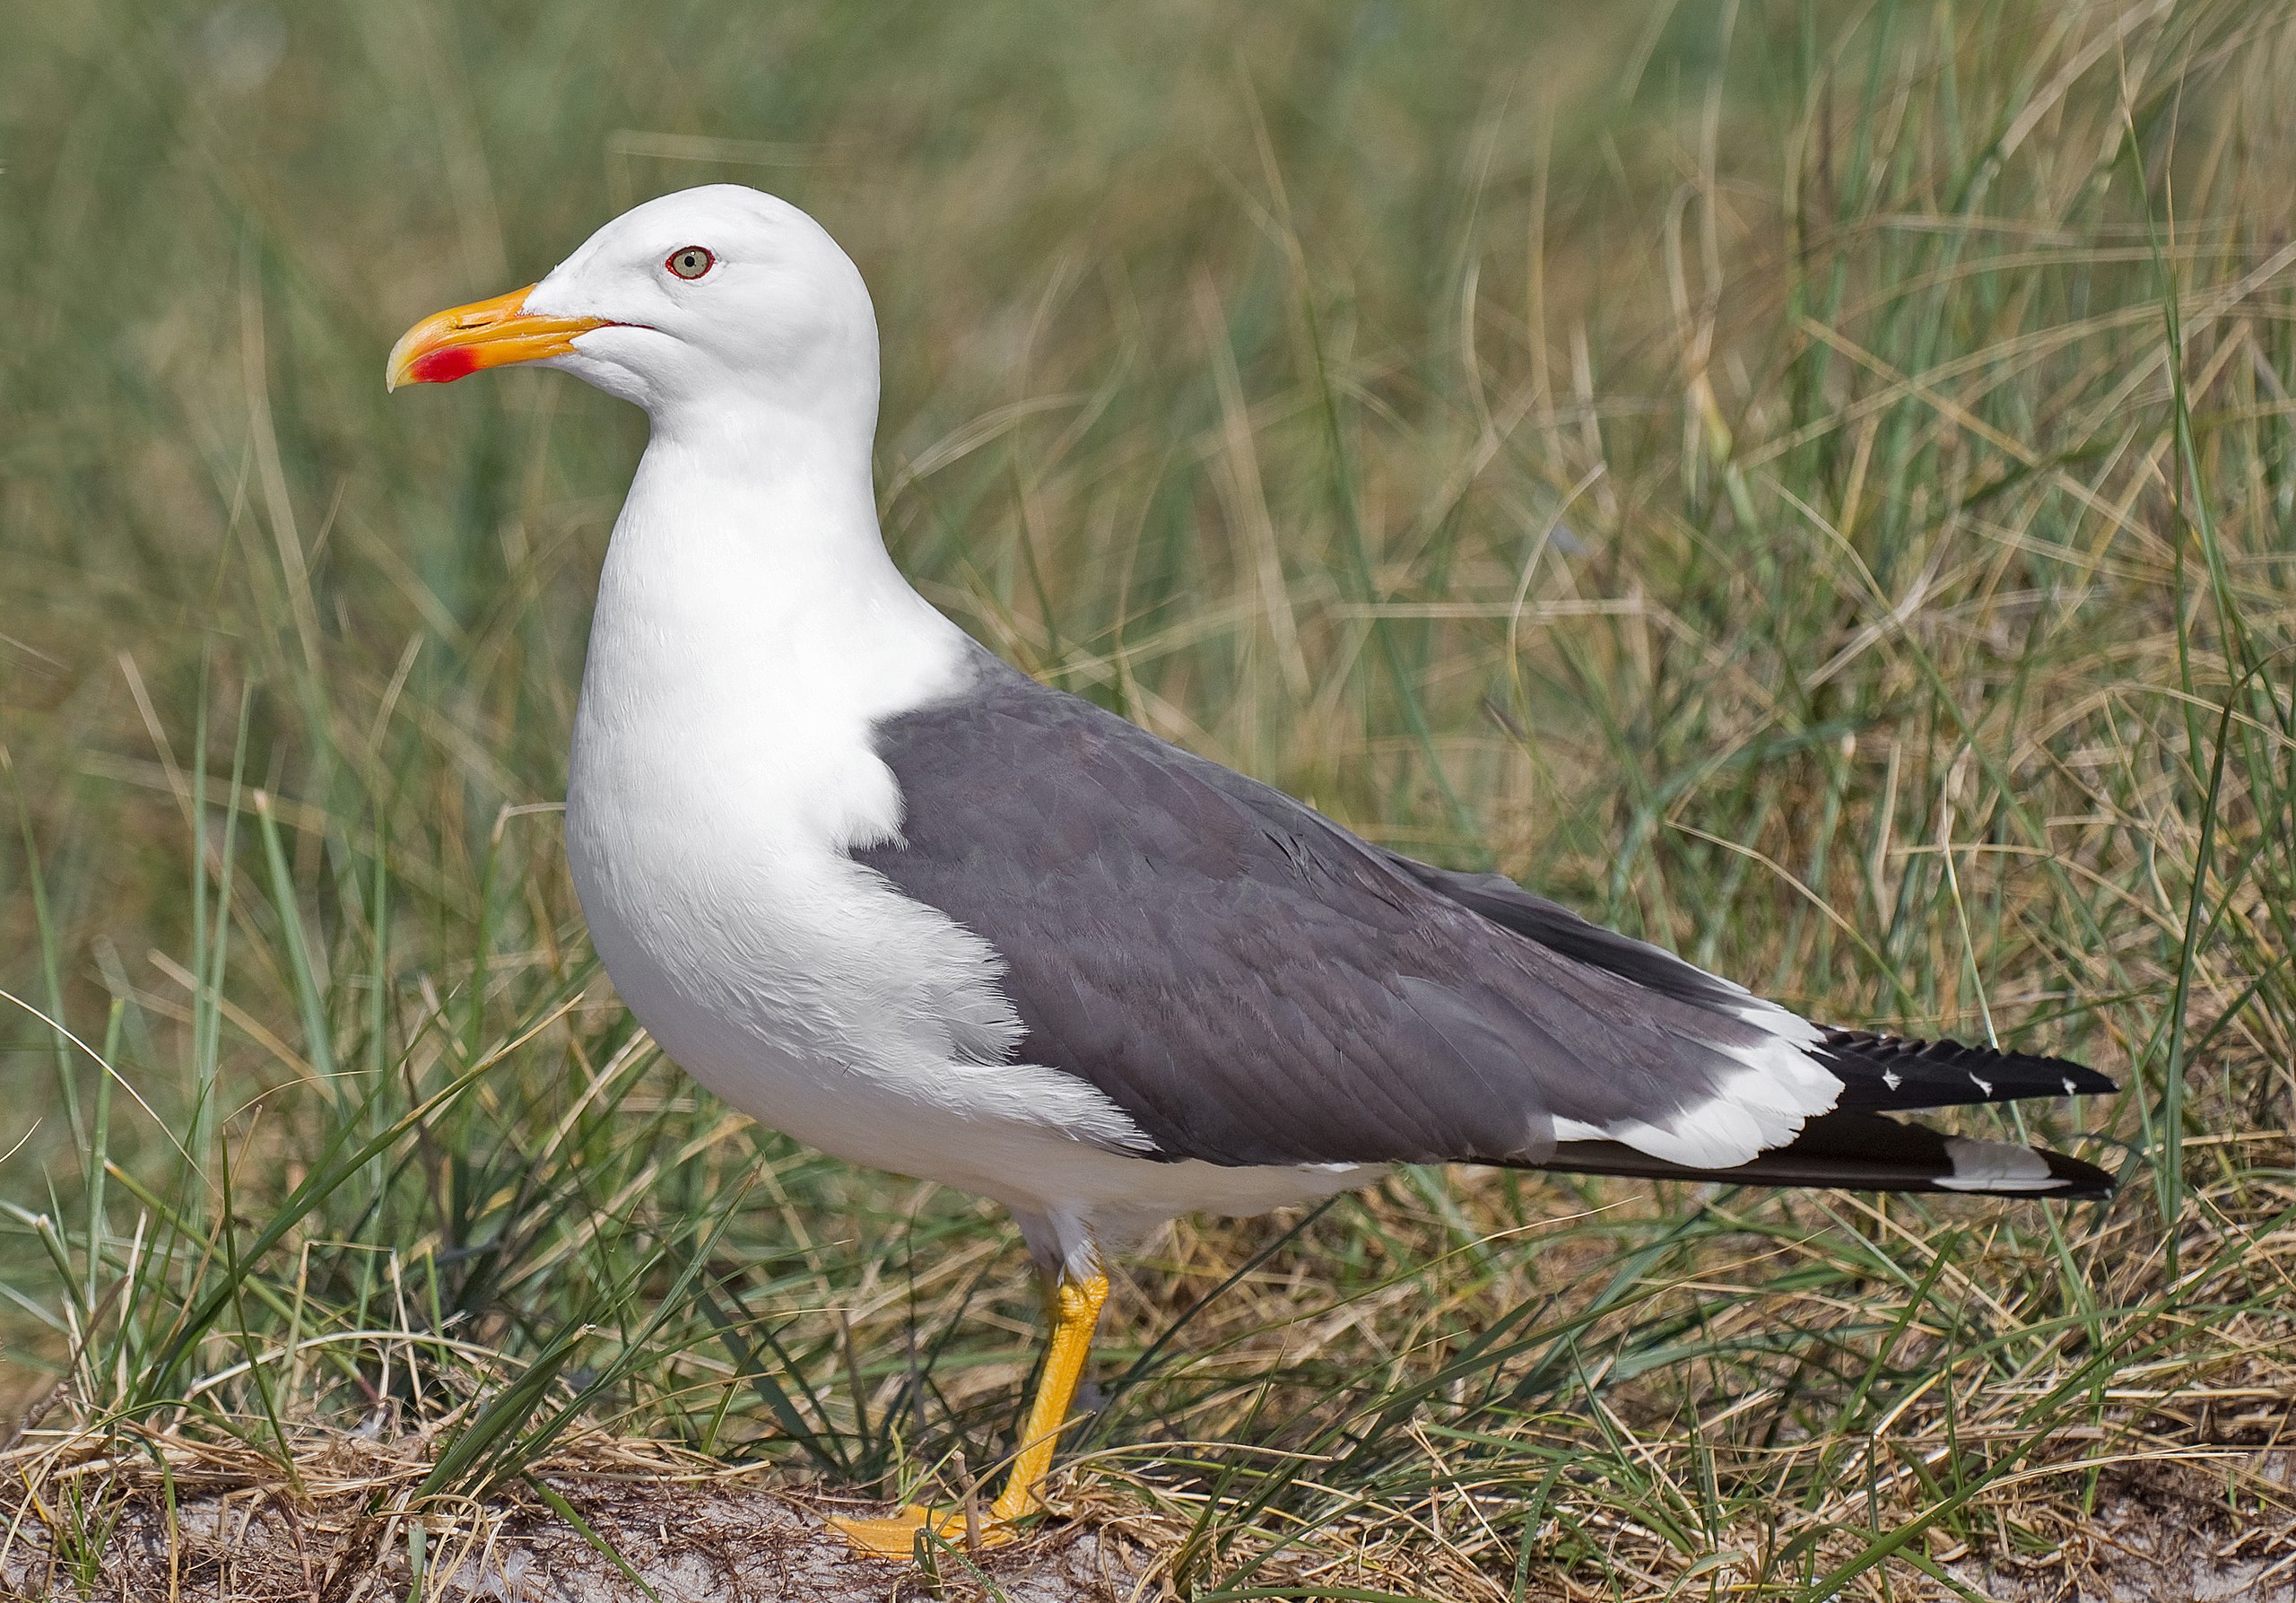 A lesser black-backed gull